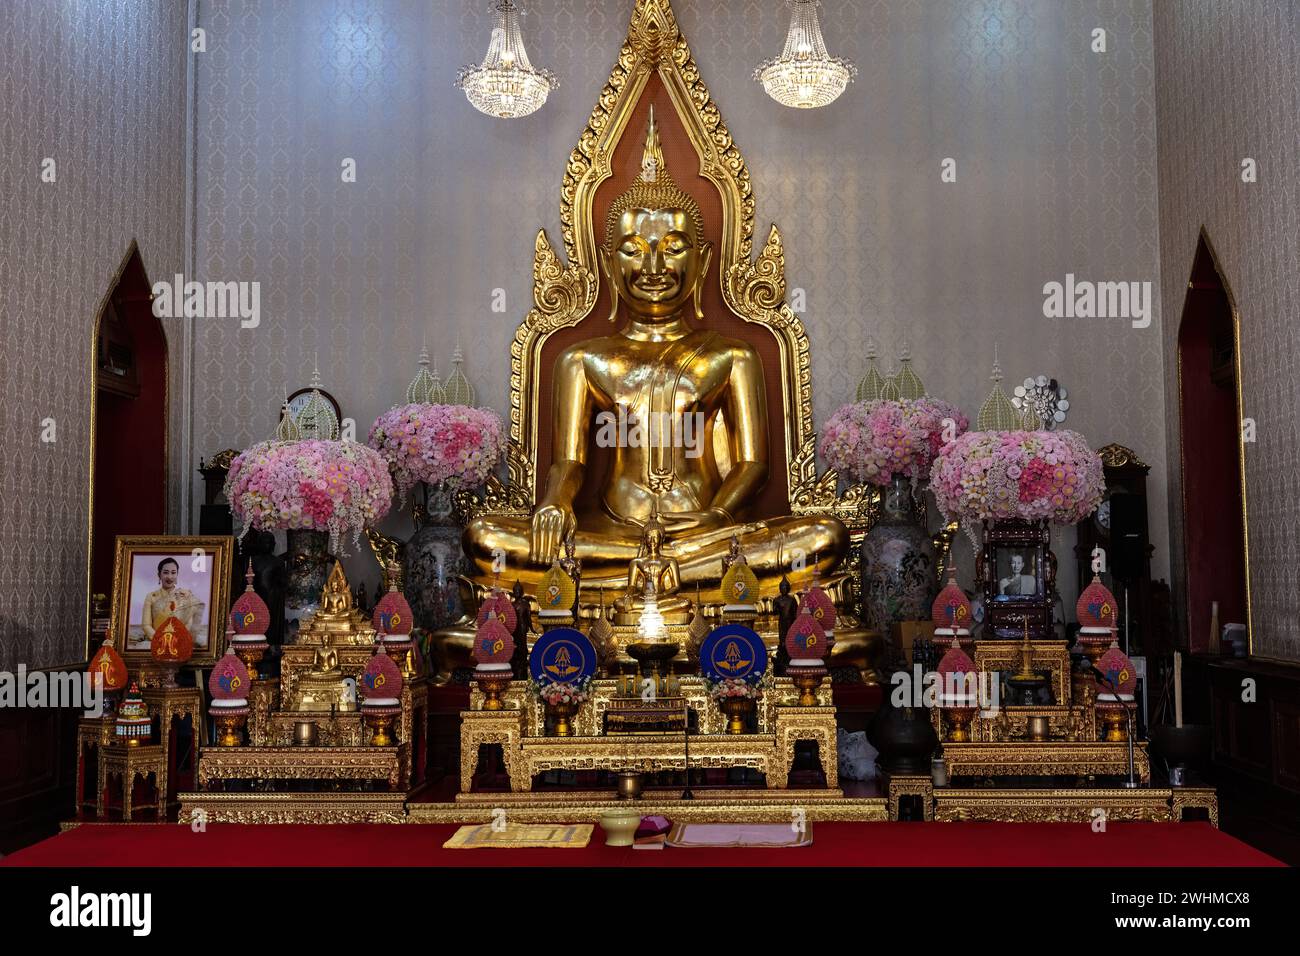 Statua del Buddha d'oro, Wat Traimit (Tempio del Buddha d'oro). Realizzato in oro 18 carati, è alto 3 metri e pesa 5,5 tonnellate. Foto Stock